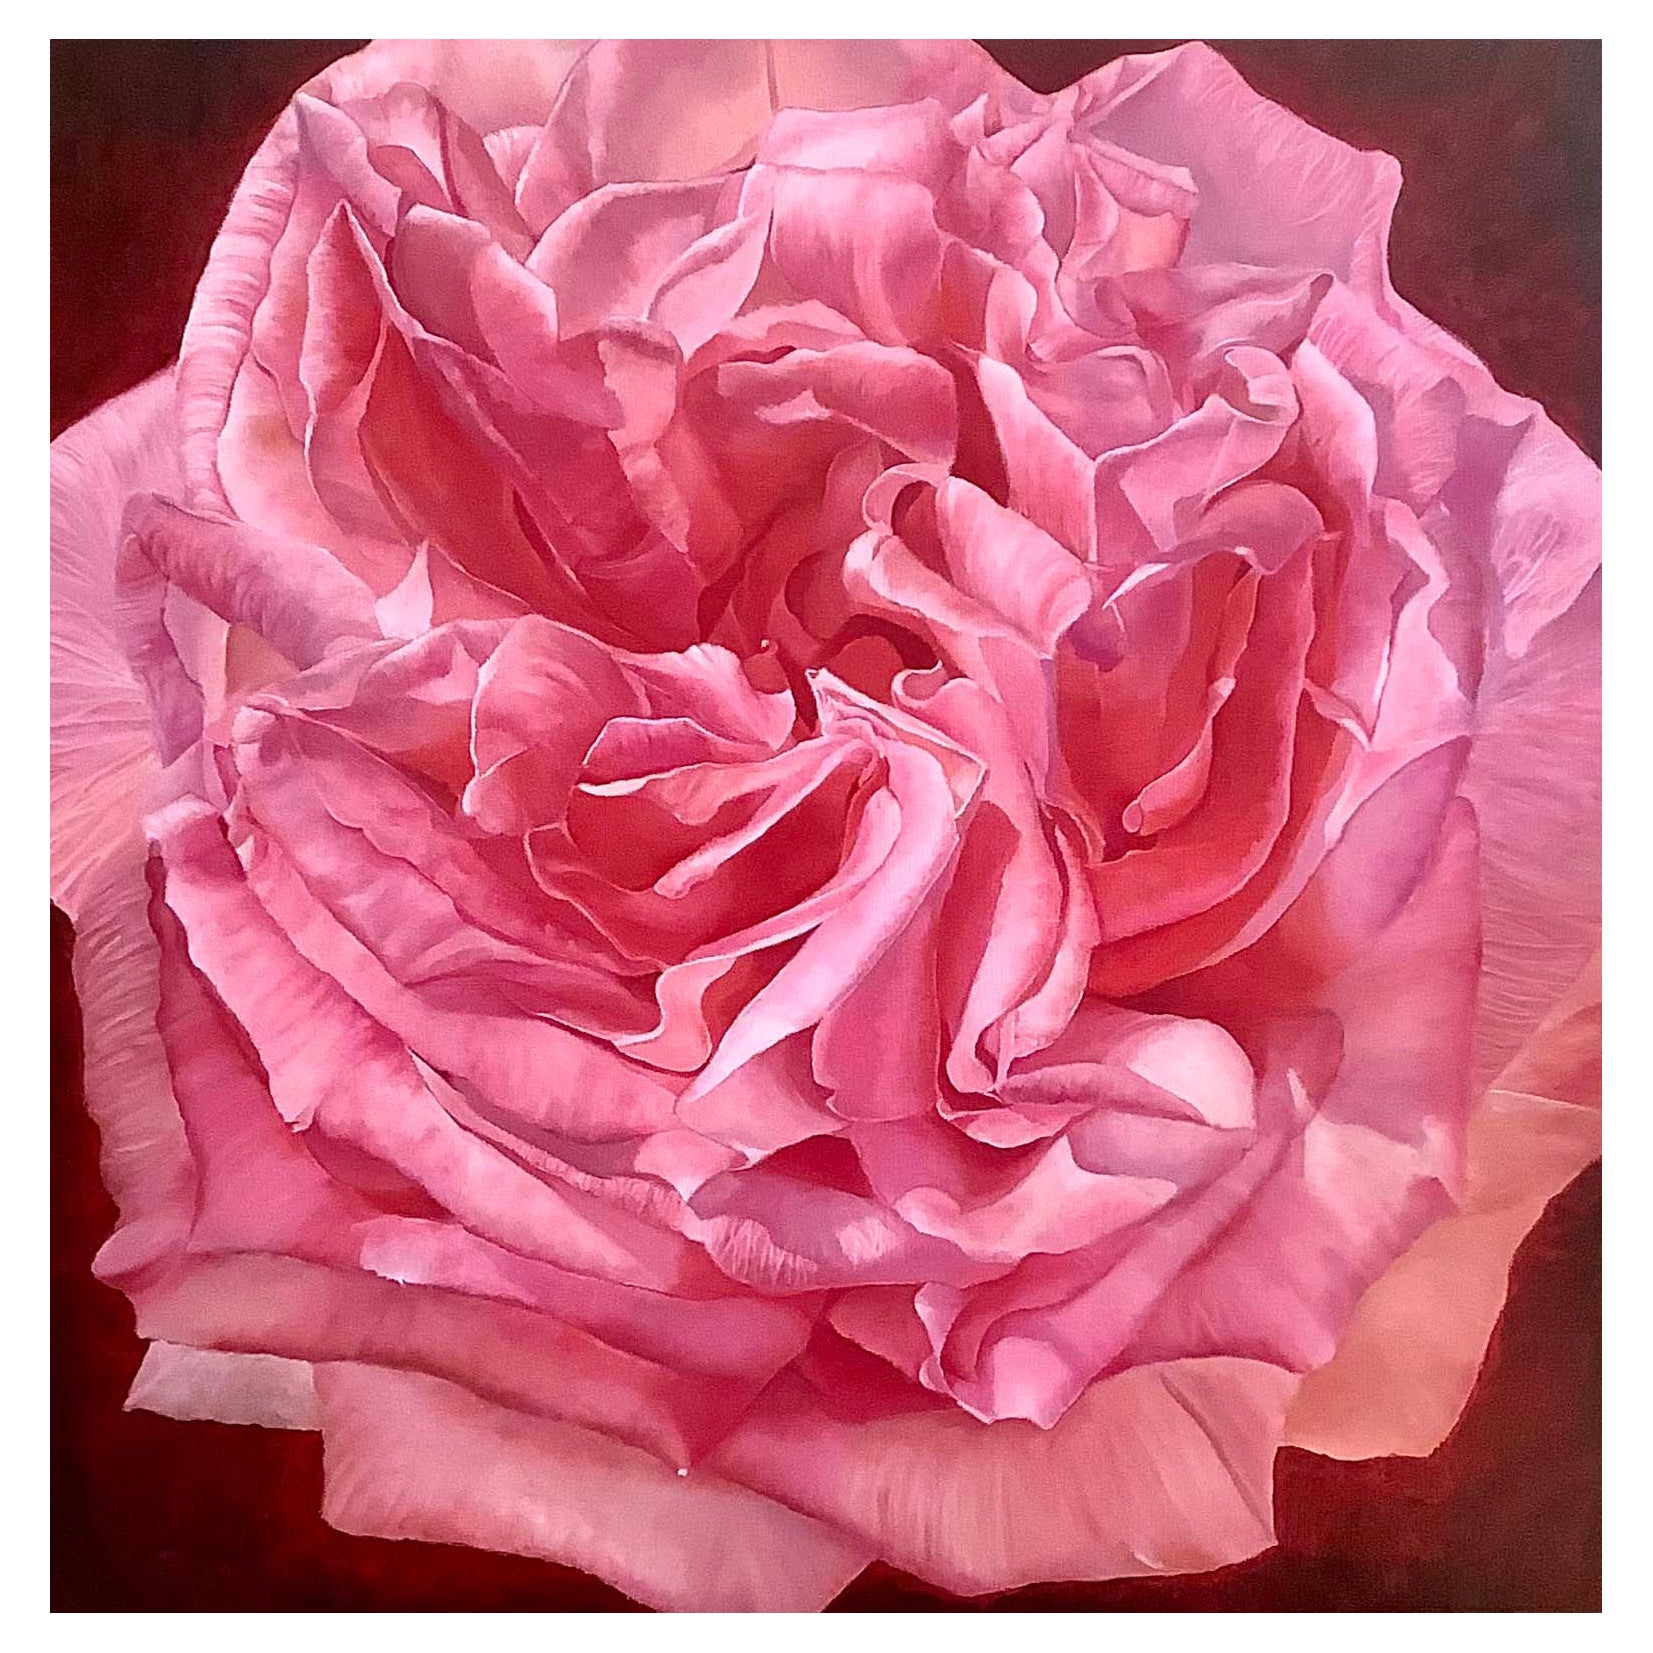 Gerahmtes Ölgemälde auf Leinwand „Vivienne“ - Rosa Farbe Rose von Shelly Gurton